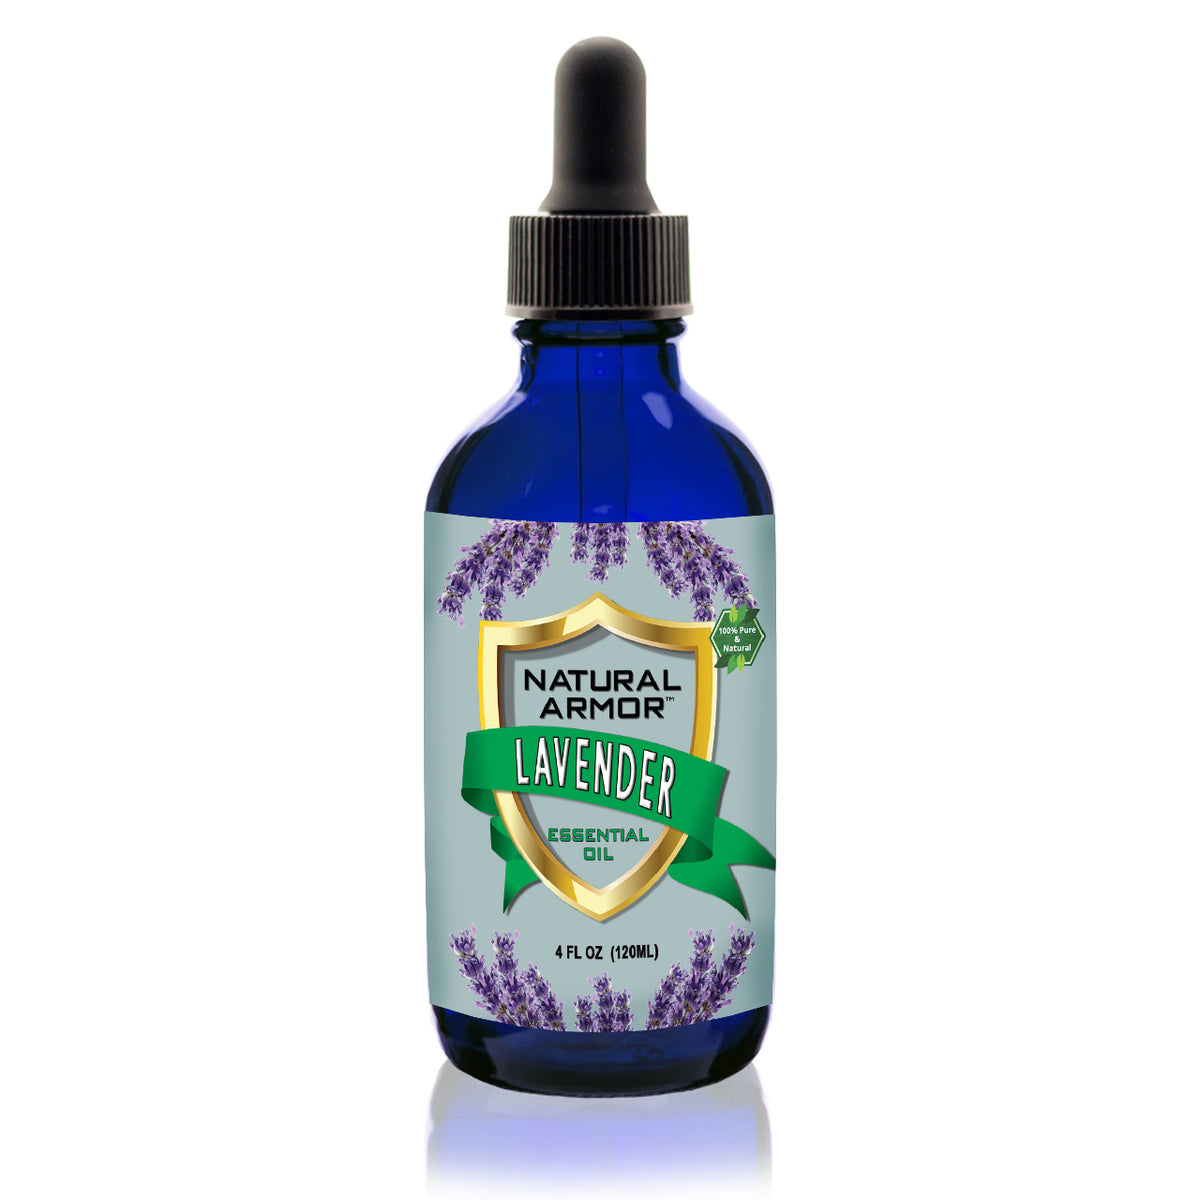 GetUSCart- Gya Labs English Lavender Oil Essential Oil for Diffuser-  Lavender Oil Essential Oils for Skin - Lavender Essential Oil for Hair  (0.34 Fl Oz)